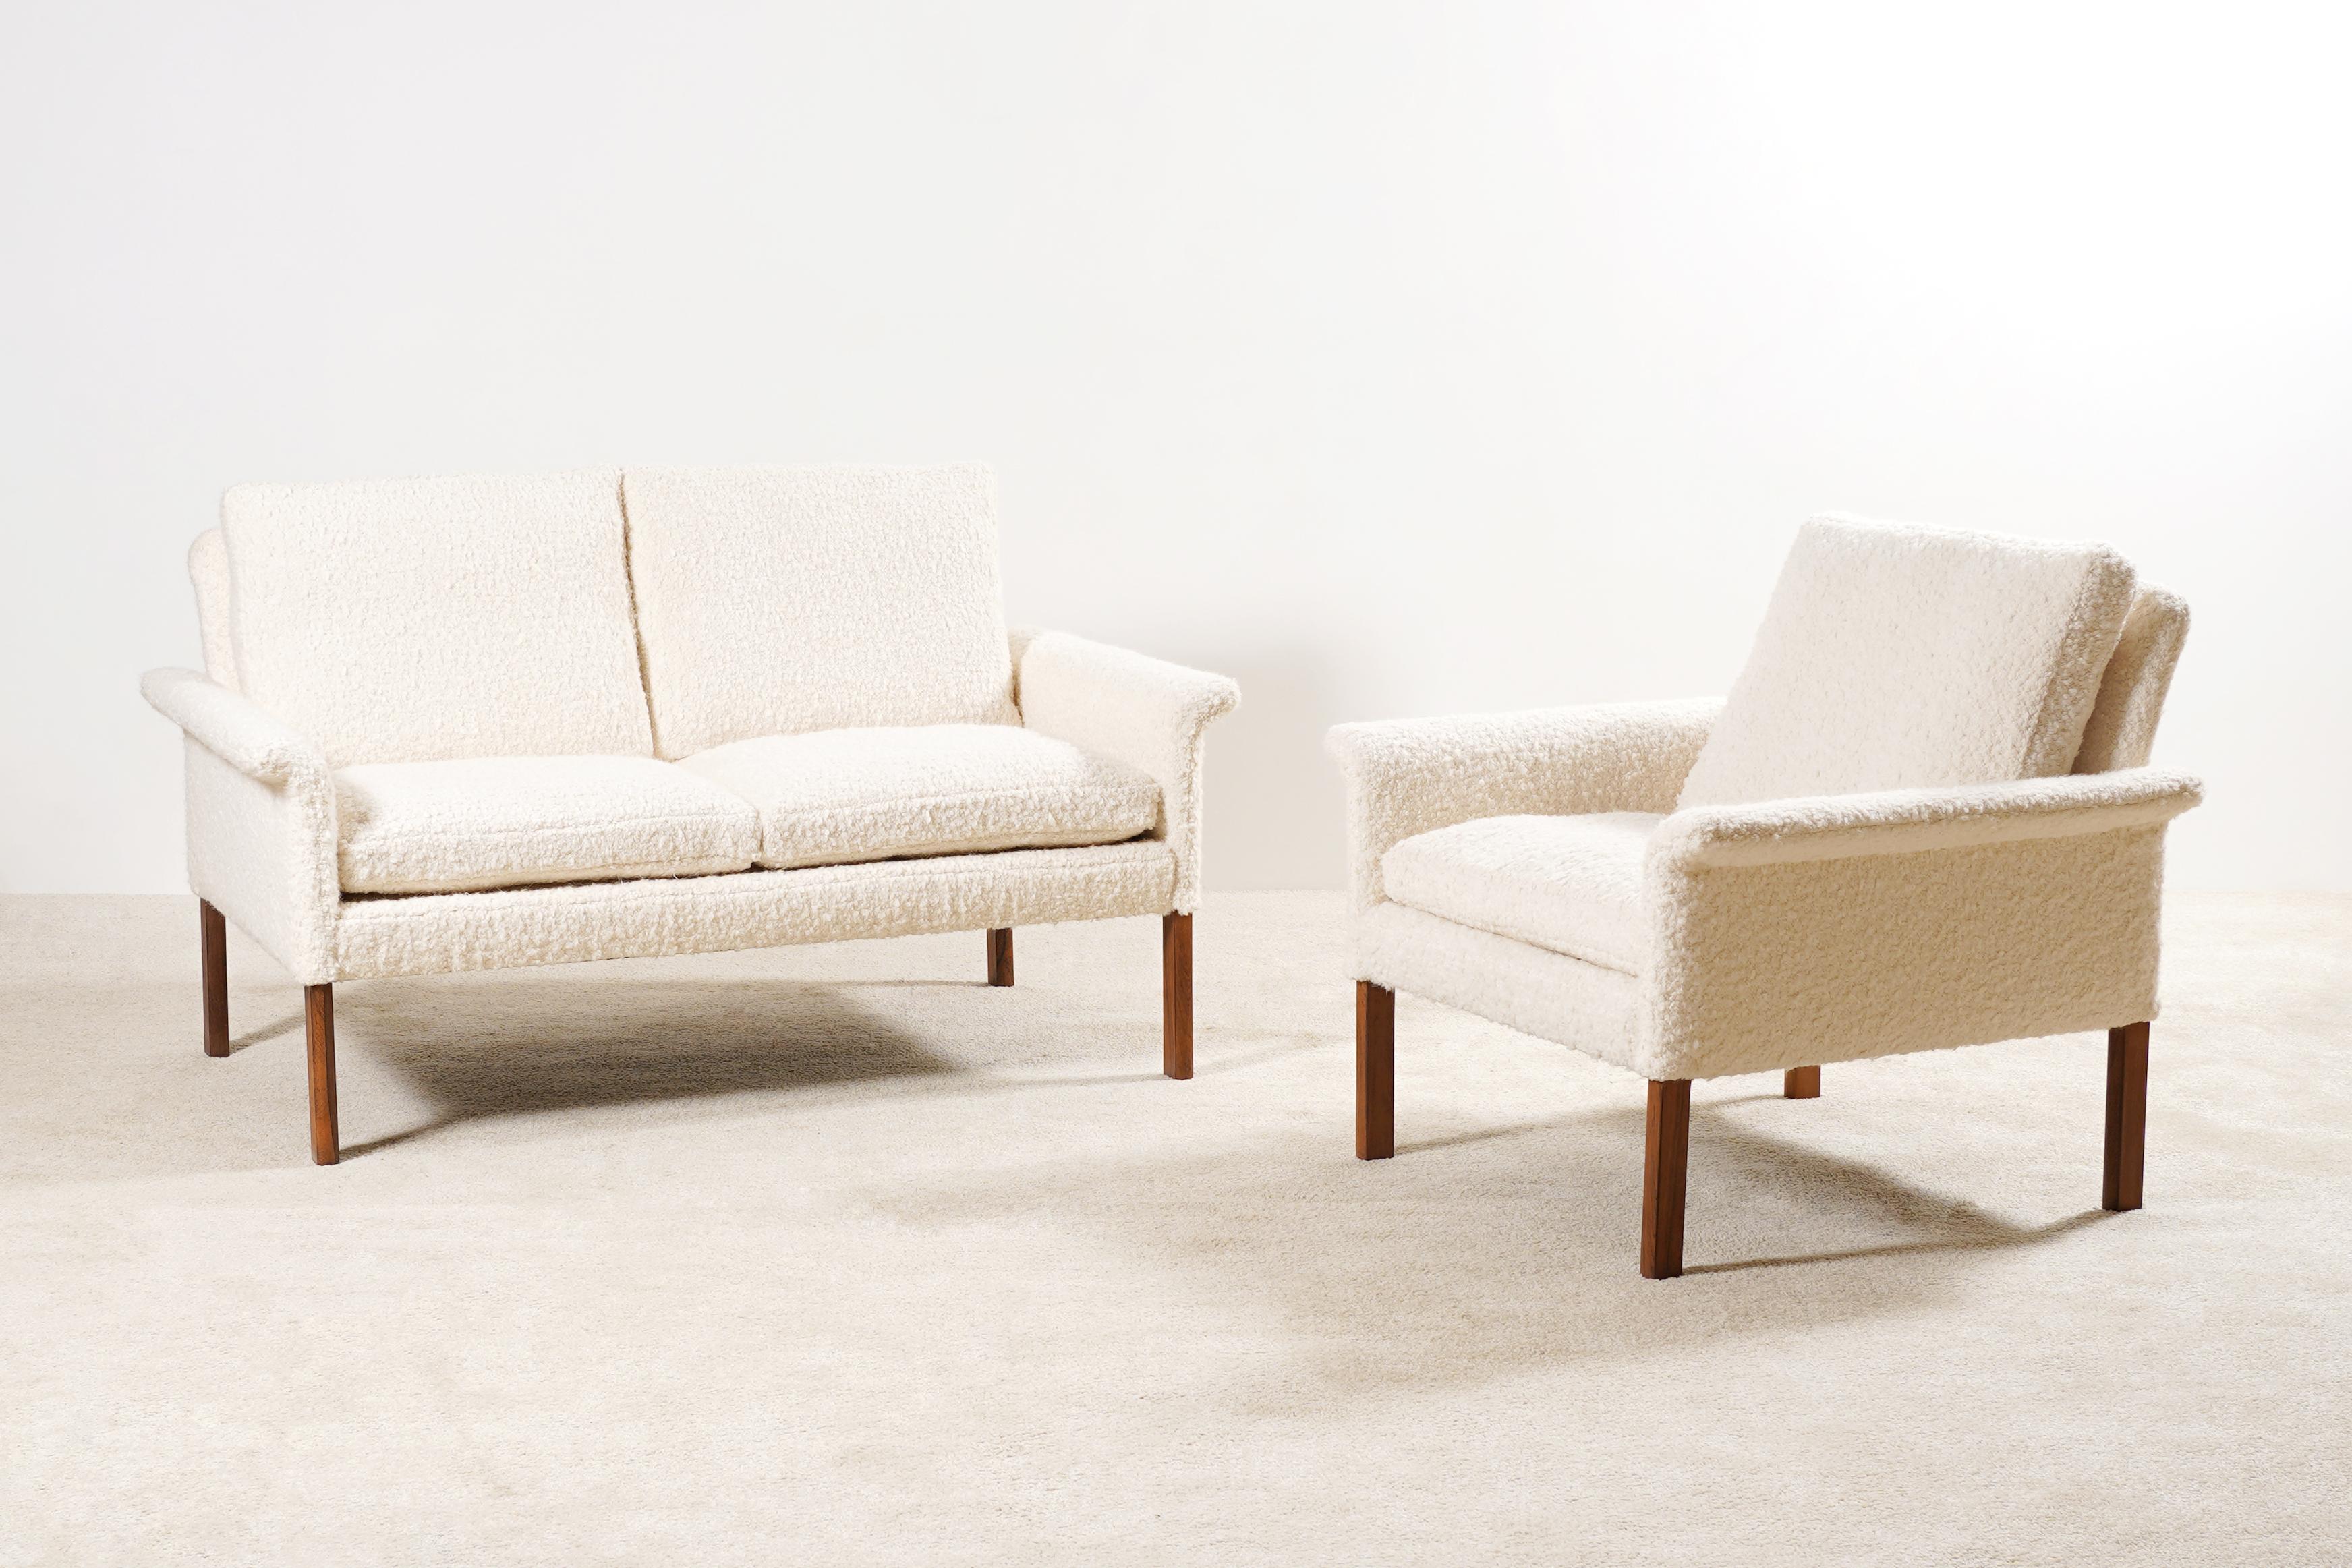 Schönes Lounge-Set bestehend aus einem Zweisitzer-Sofa und einem Sessel Modell 500, entworfen von Hans Olsen für die dänische Firma CS Møbler.

Schöne Qualität für die Palisanderfüße.

Originalstücke aus den 1960er Jahren Neu gepolstert nach